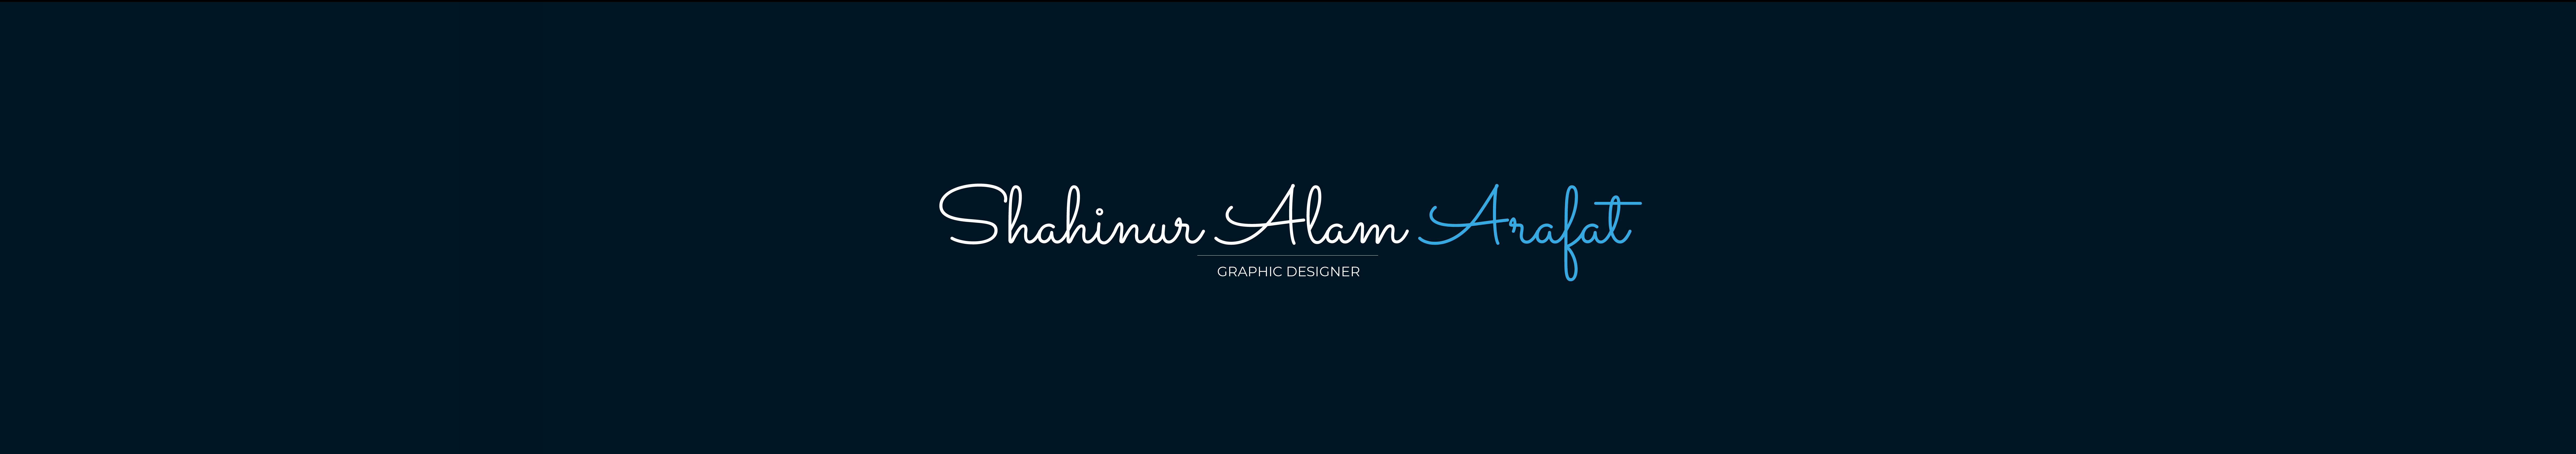 Profil-Banner von Shahinur Alam Arafat